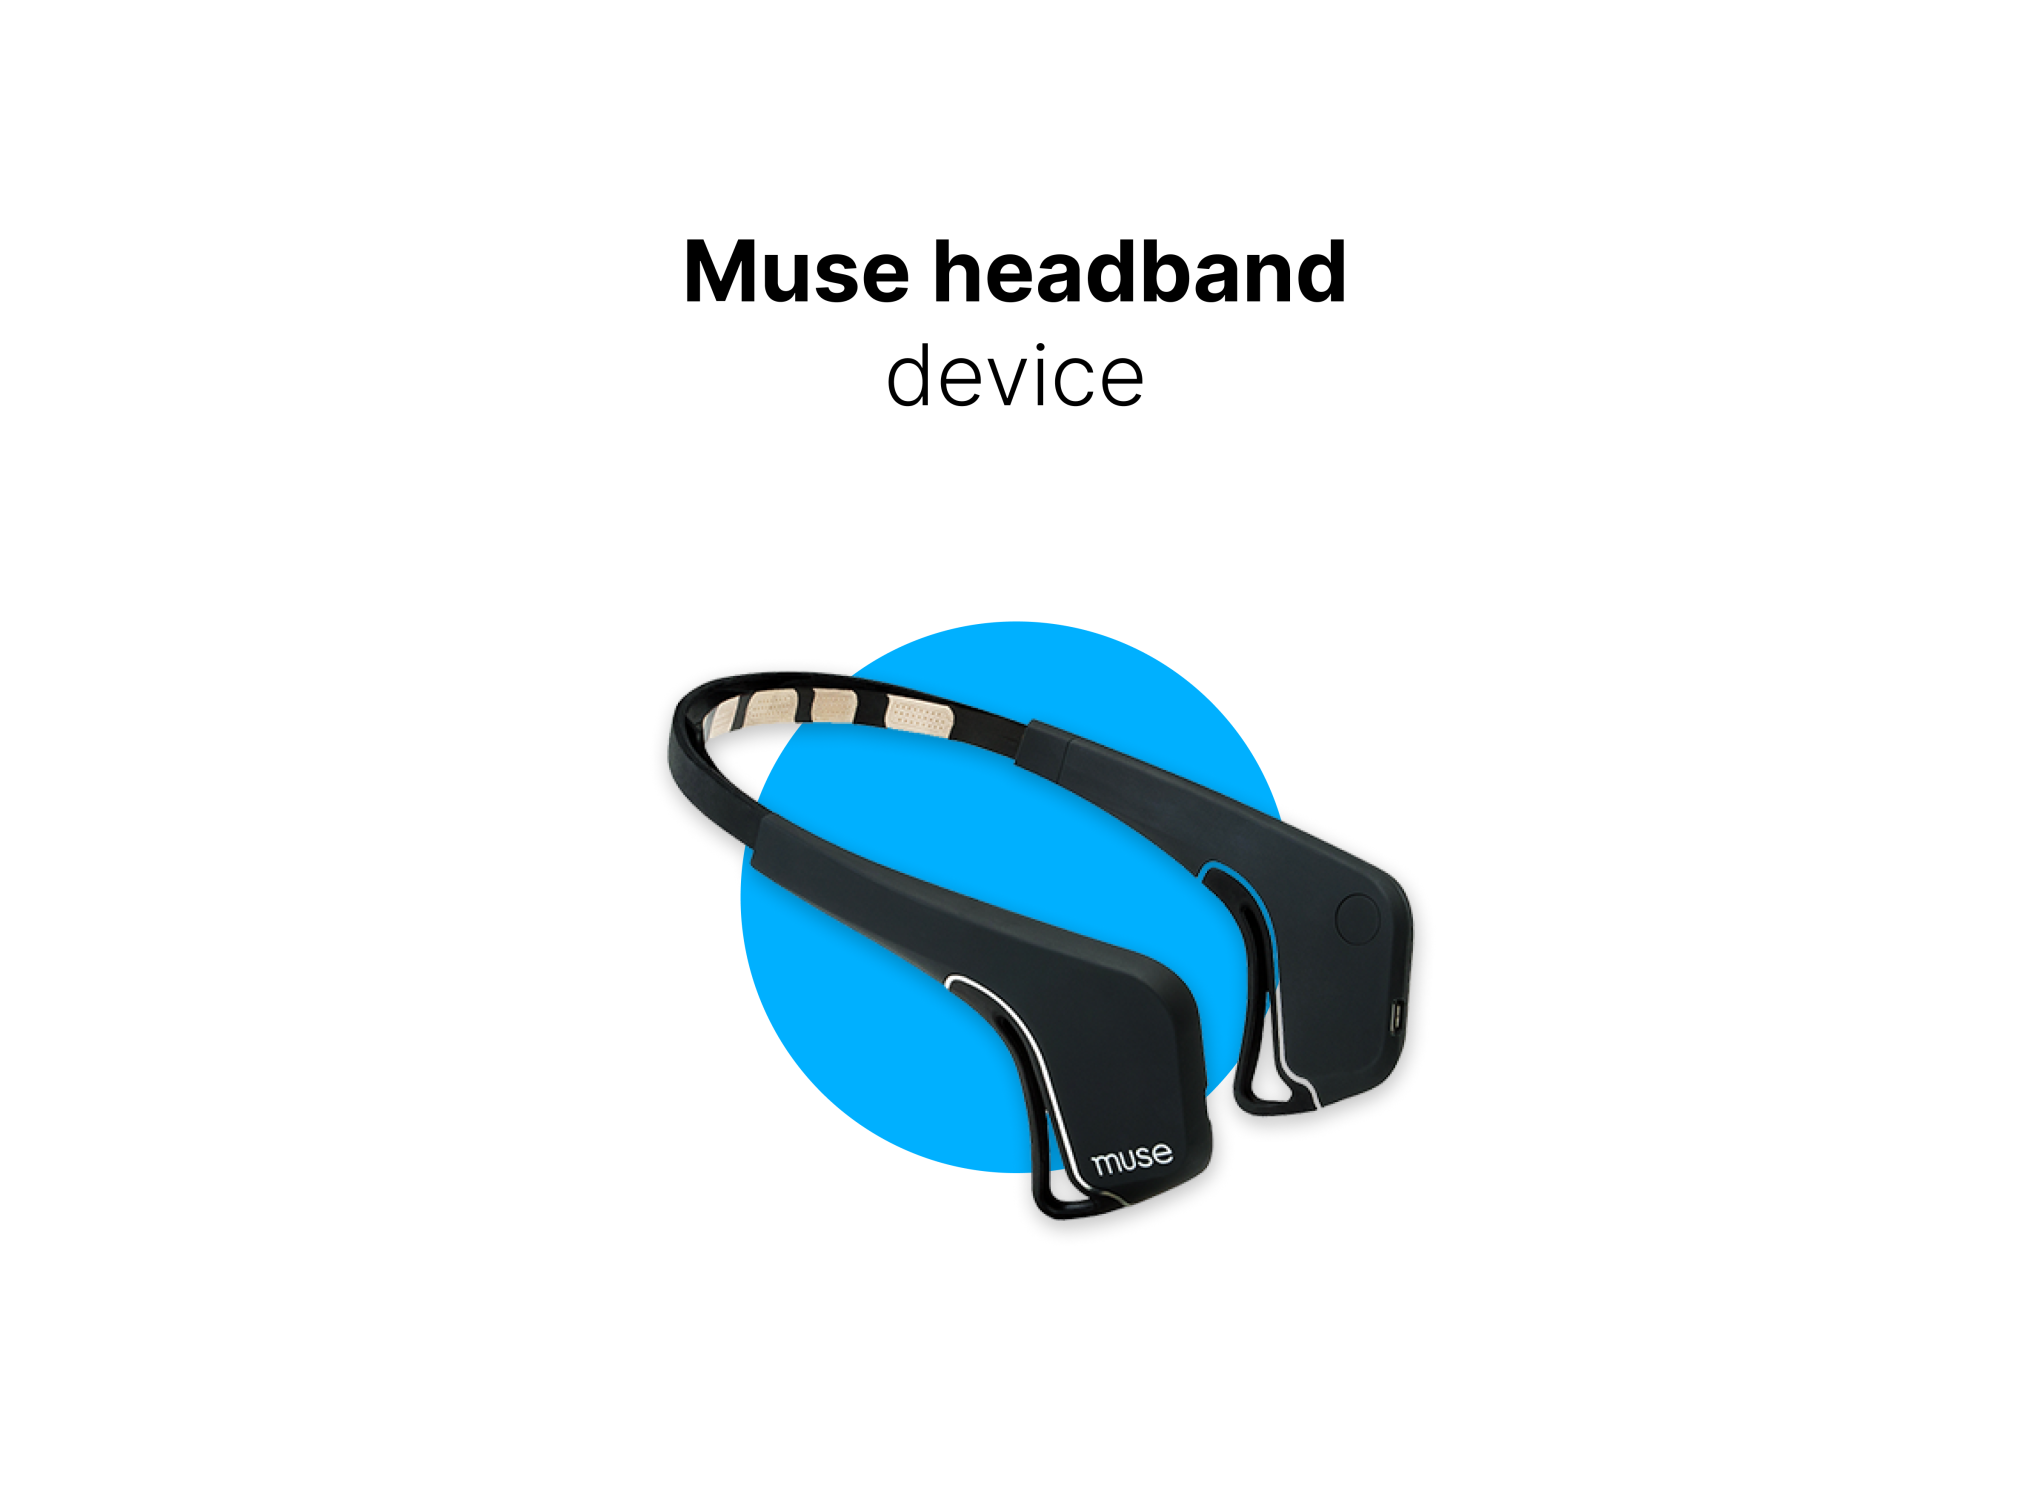 Muse headband device - Extendi